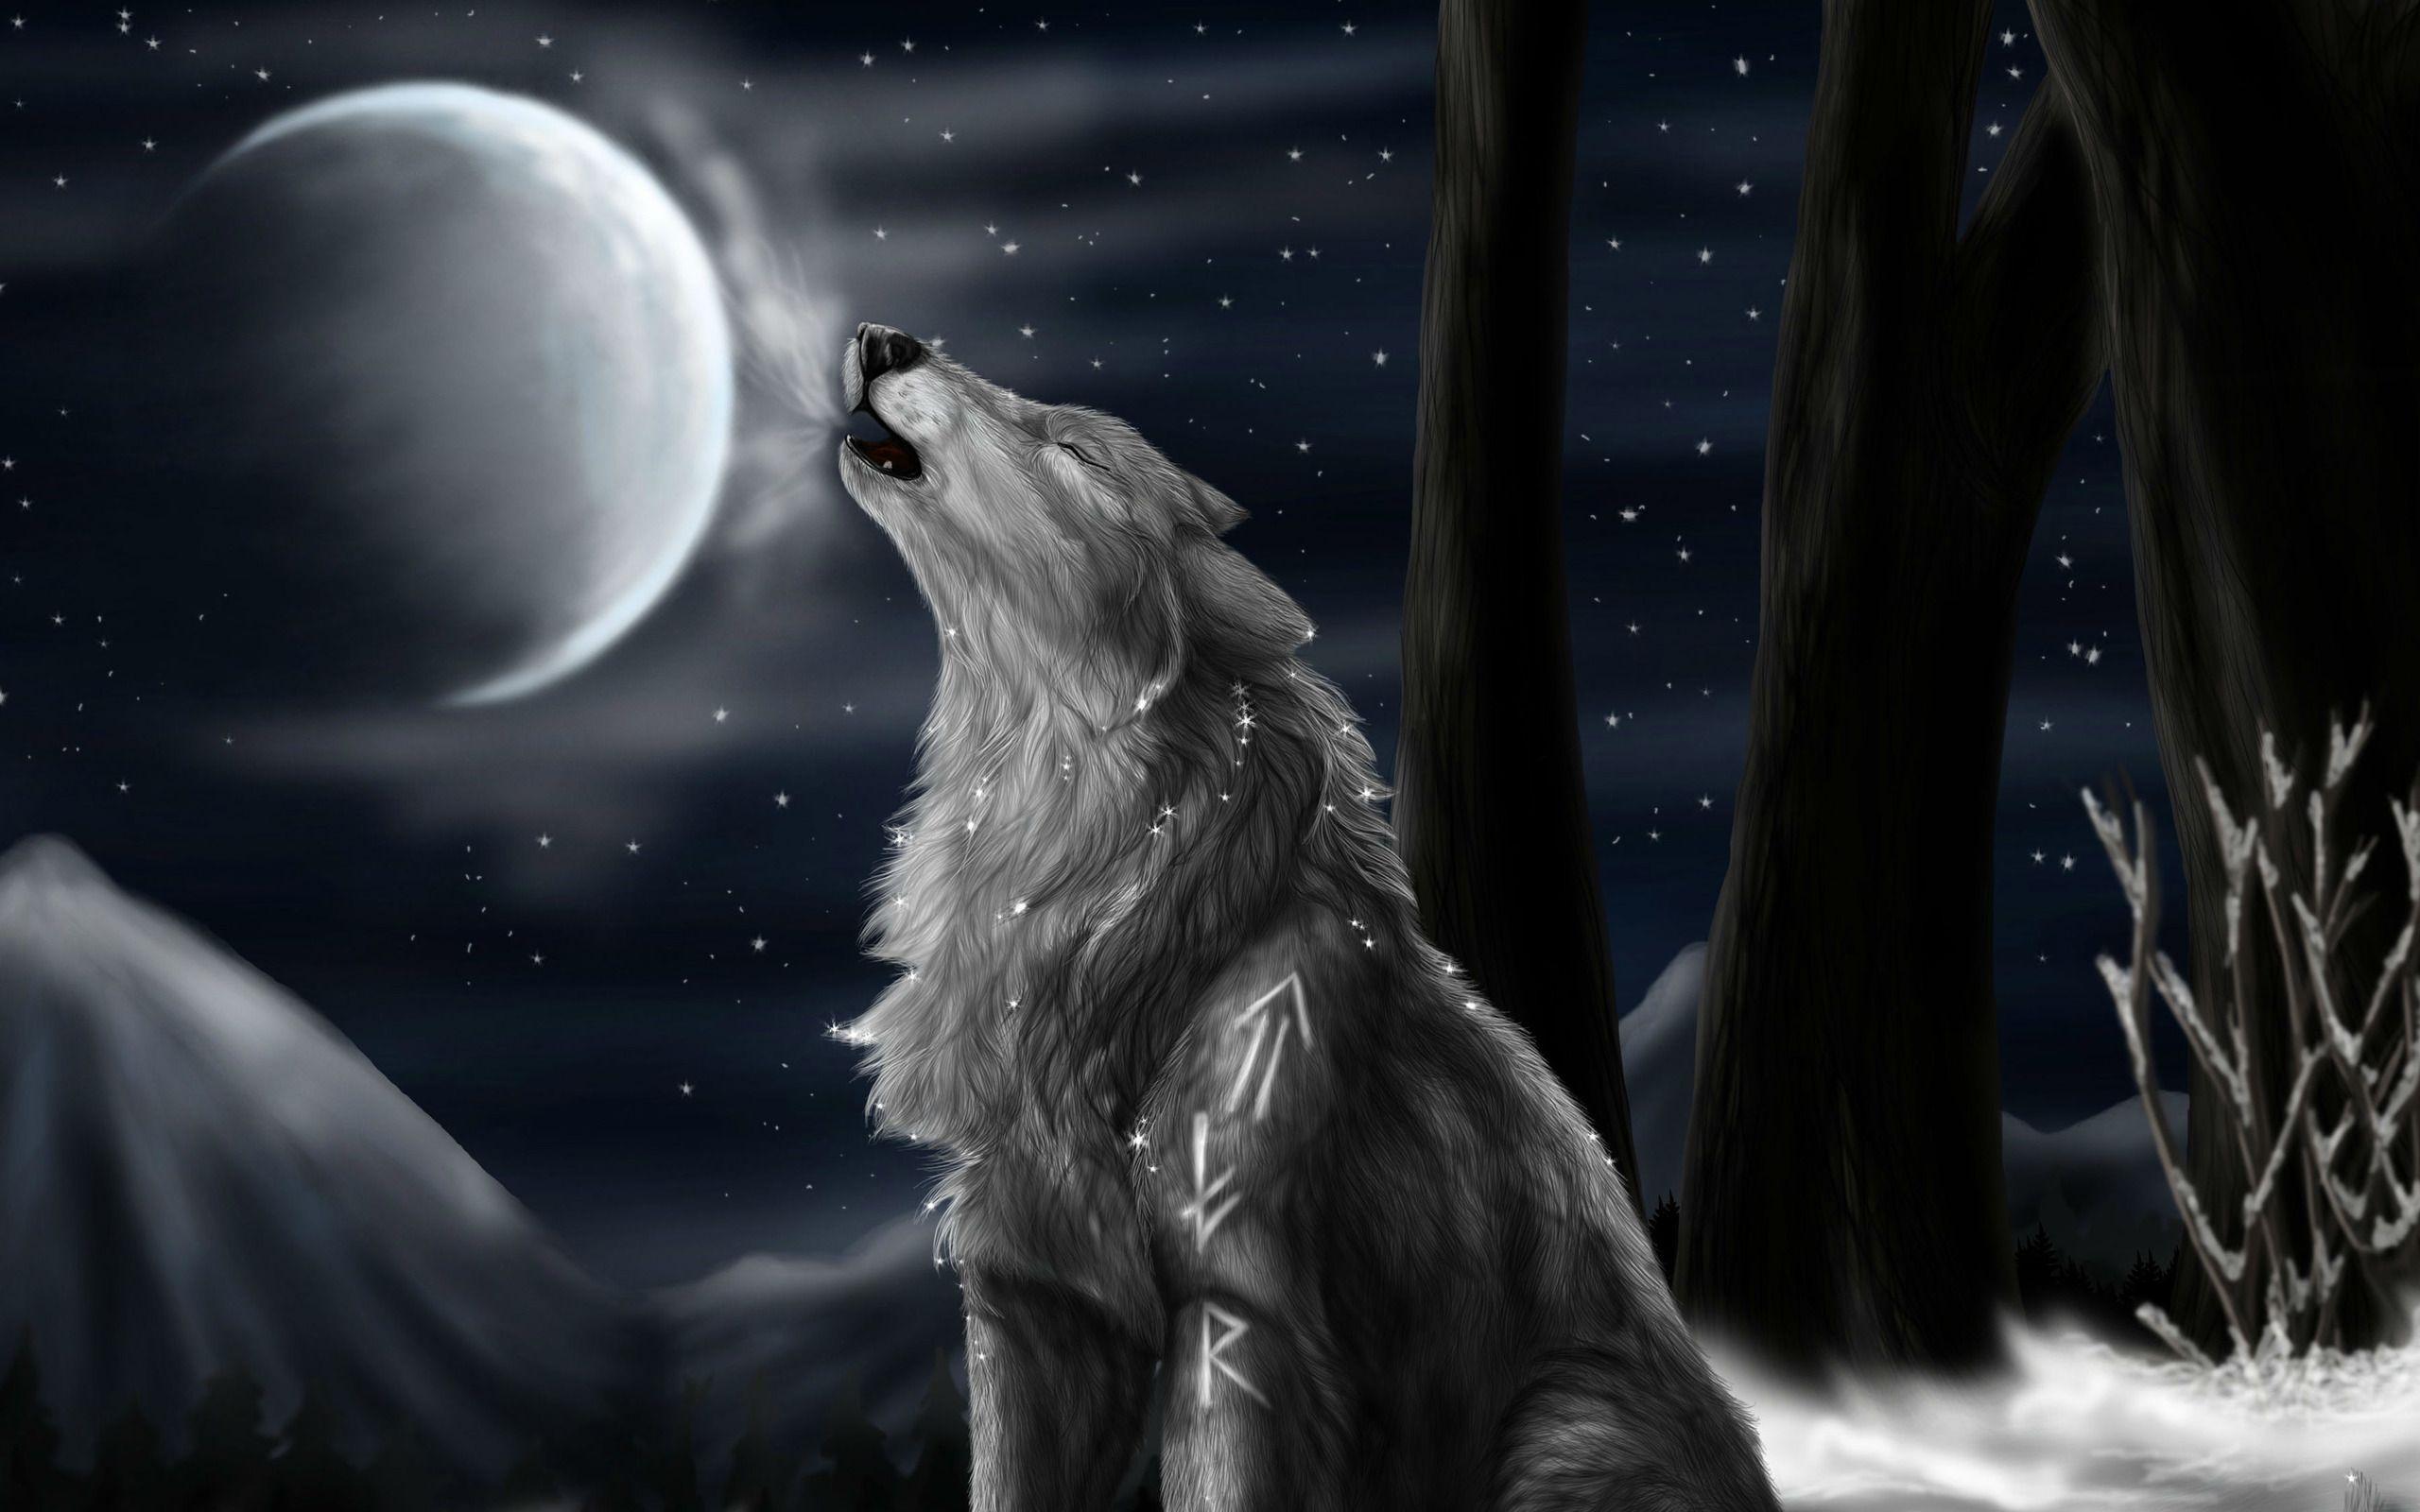 Howling wolf wallpaper  1920x1200  1345052  WallpaperUP